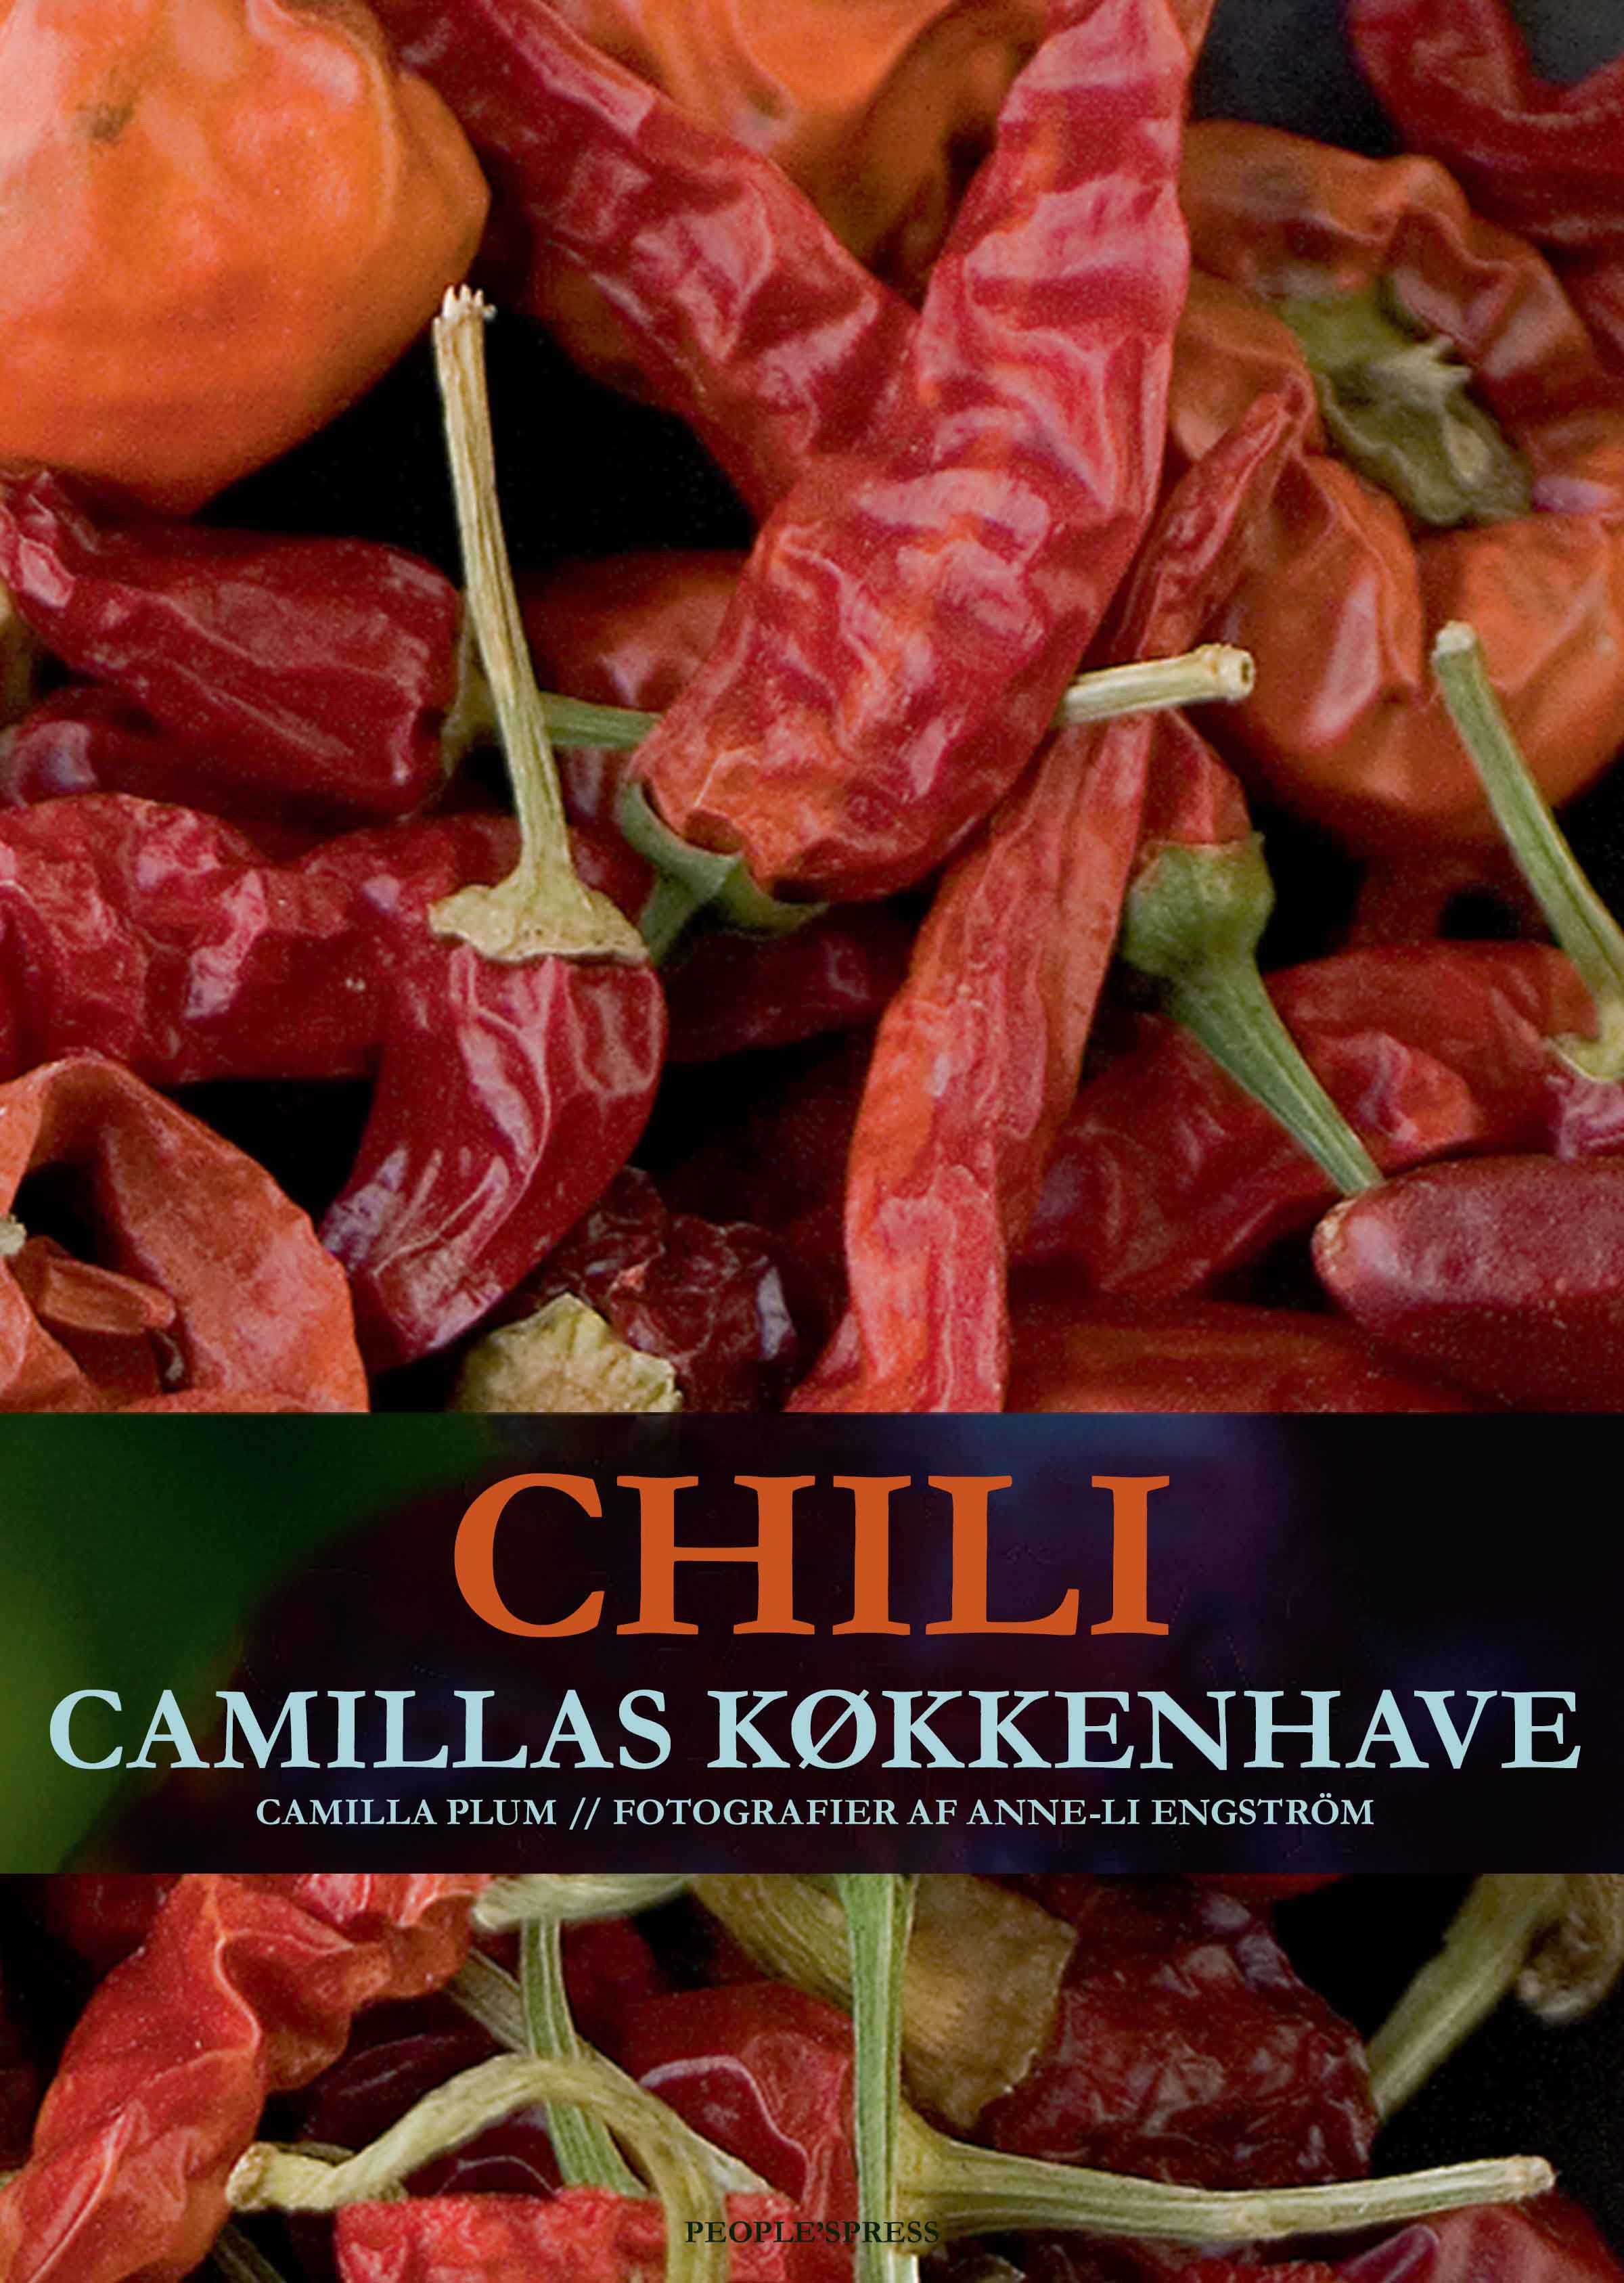 Chili - Camillas køkkenhave, e-bok av Camilla Plum